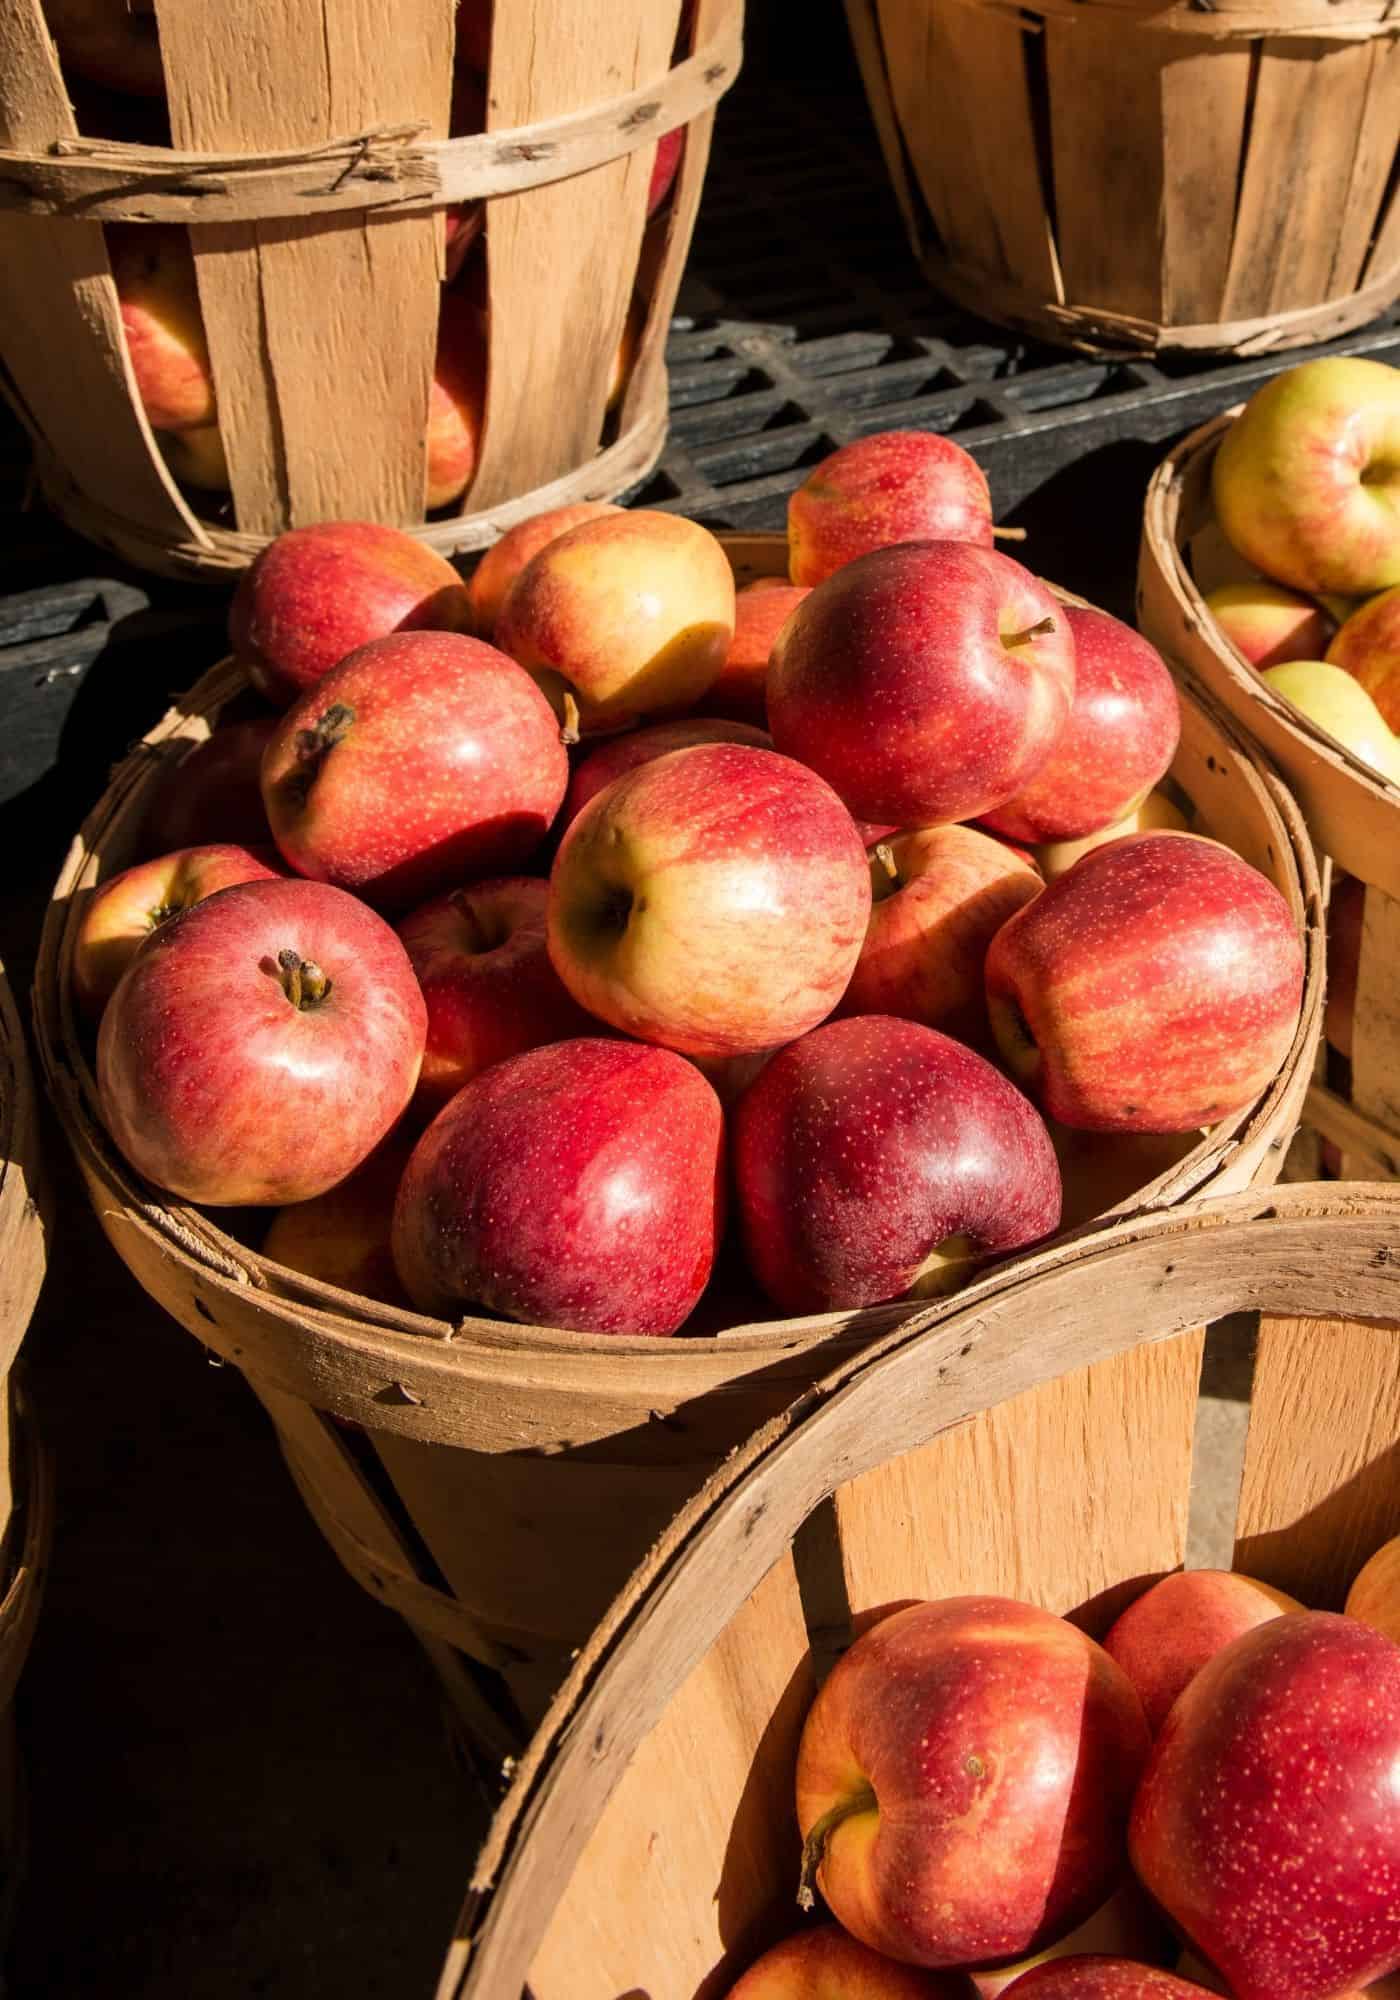 Jonagold apples in bushel basket